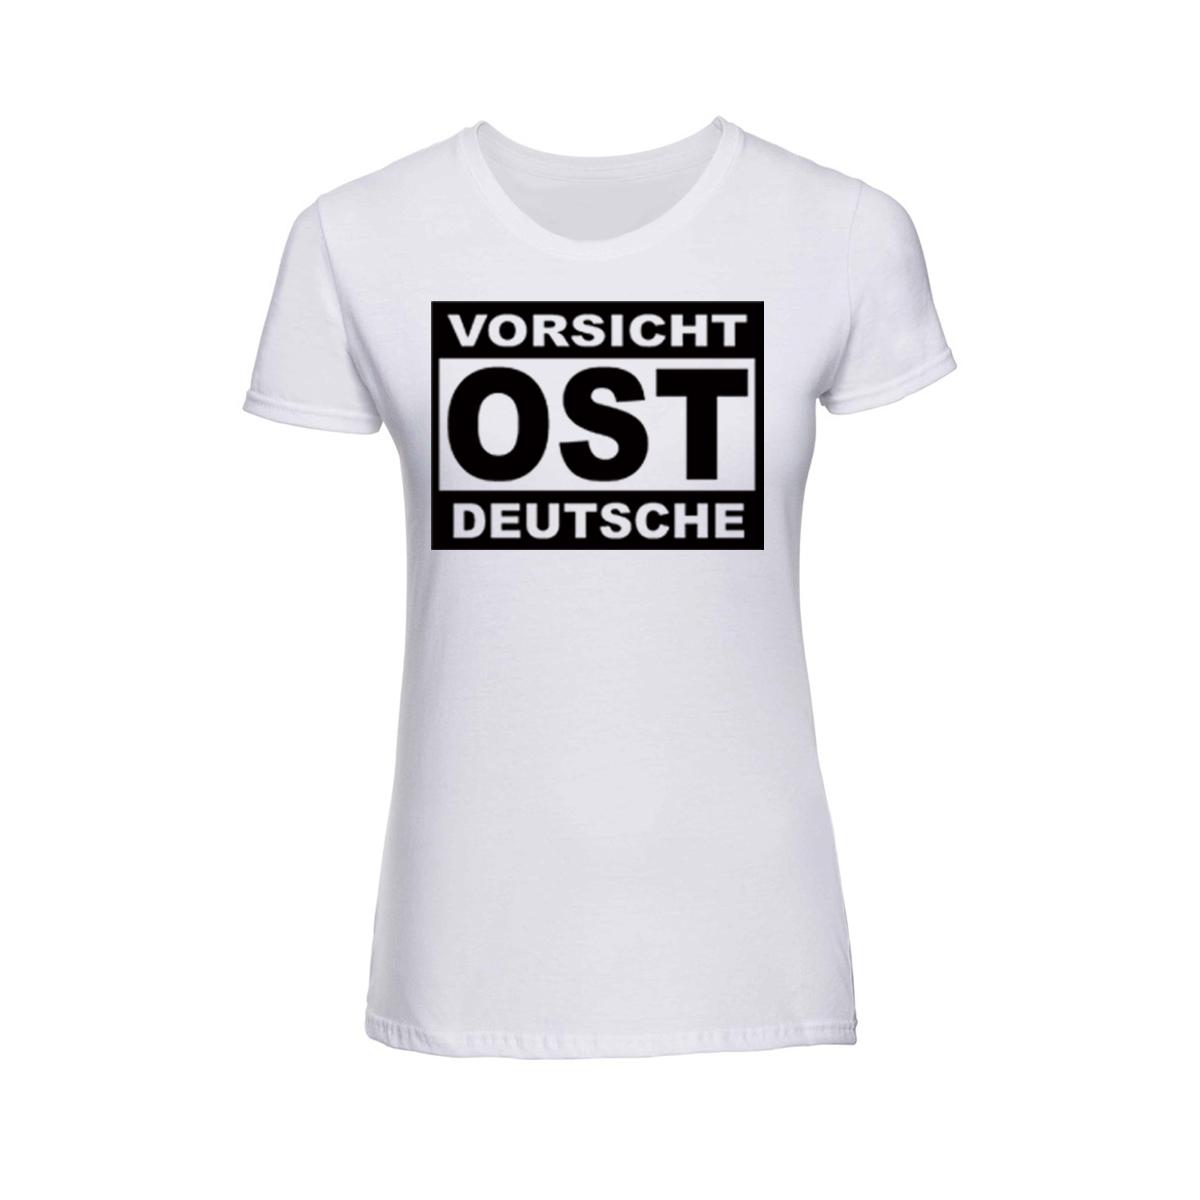 Vorsicht Ostdeutsche - Frauen Shirt - weiß